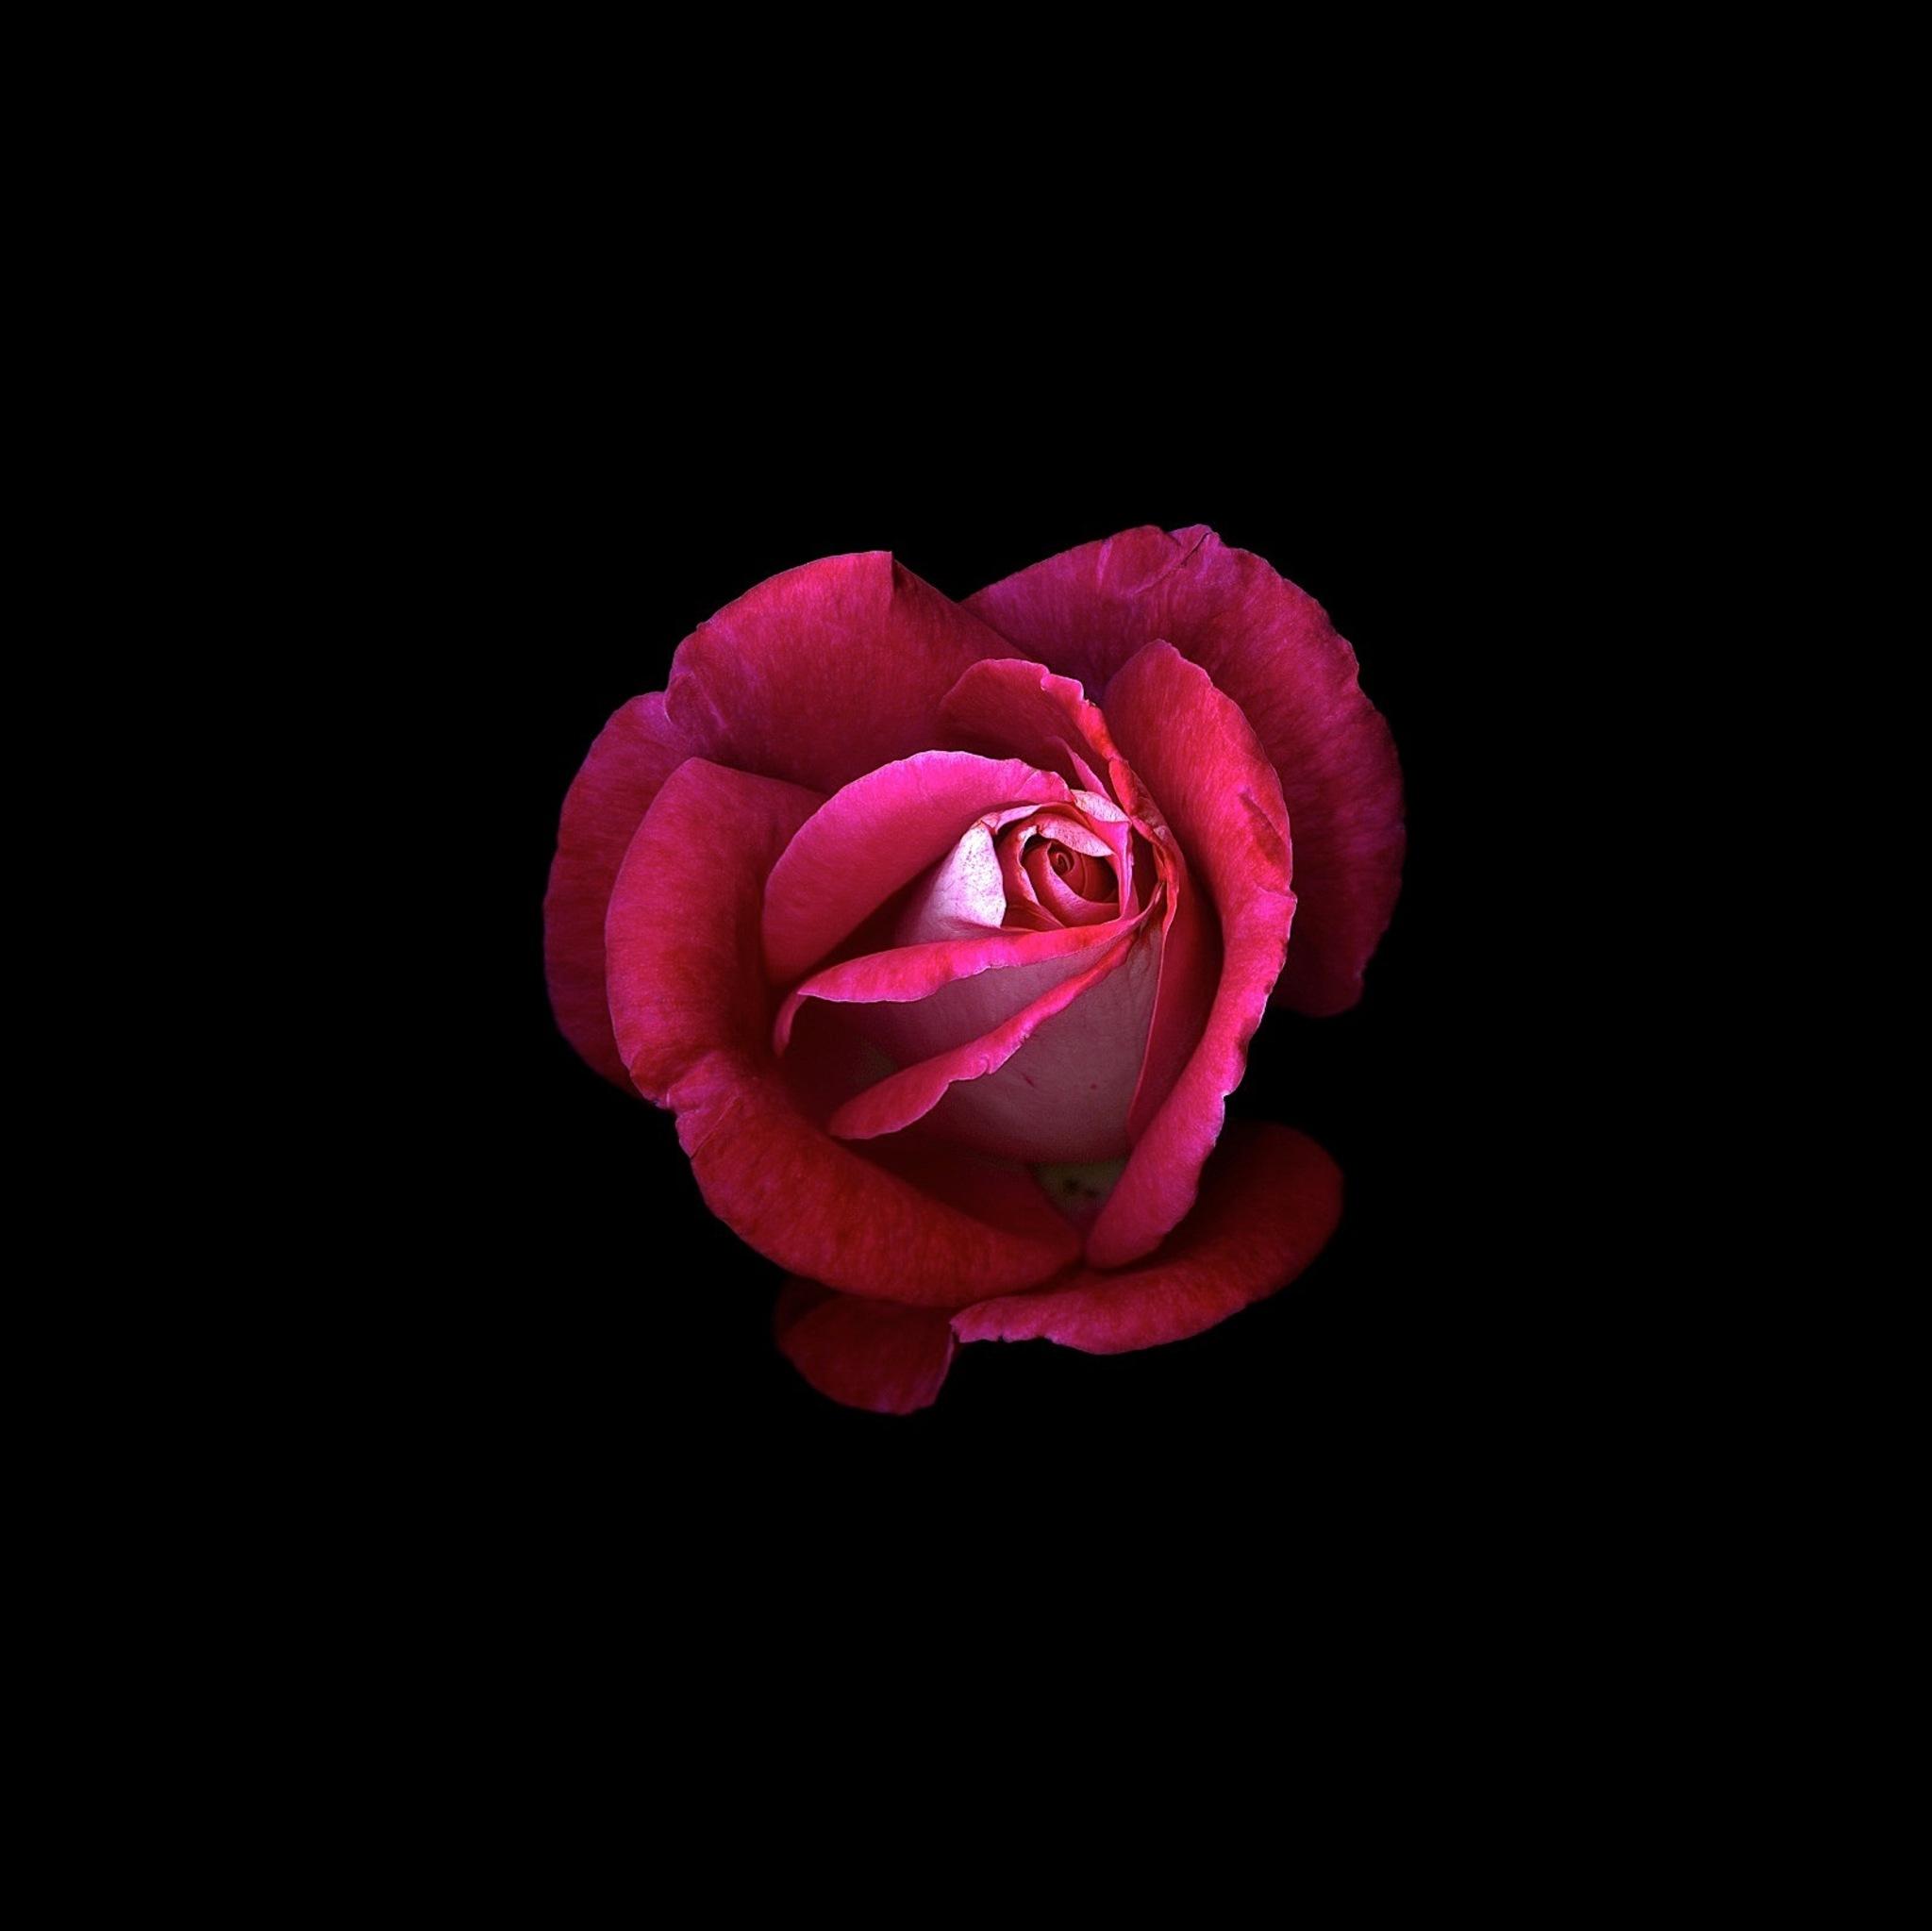 Red Rose Dark Oled iPad Air HD 4k Wallpaper Image